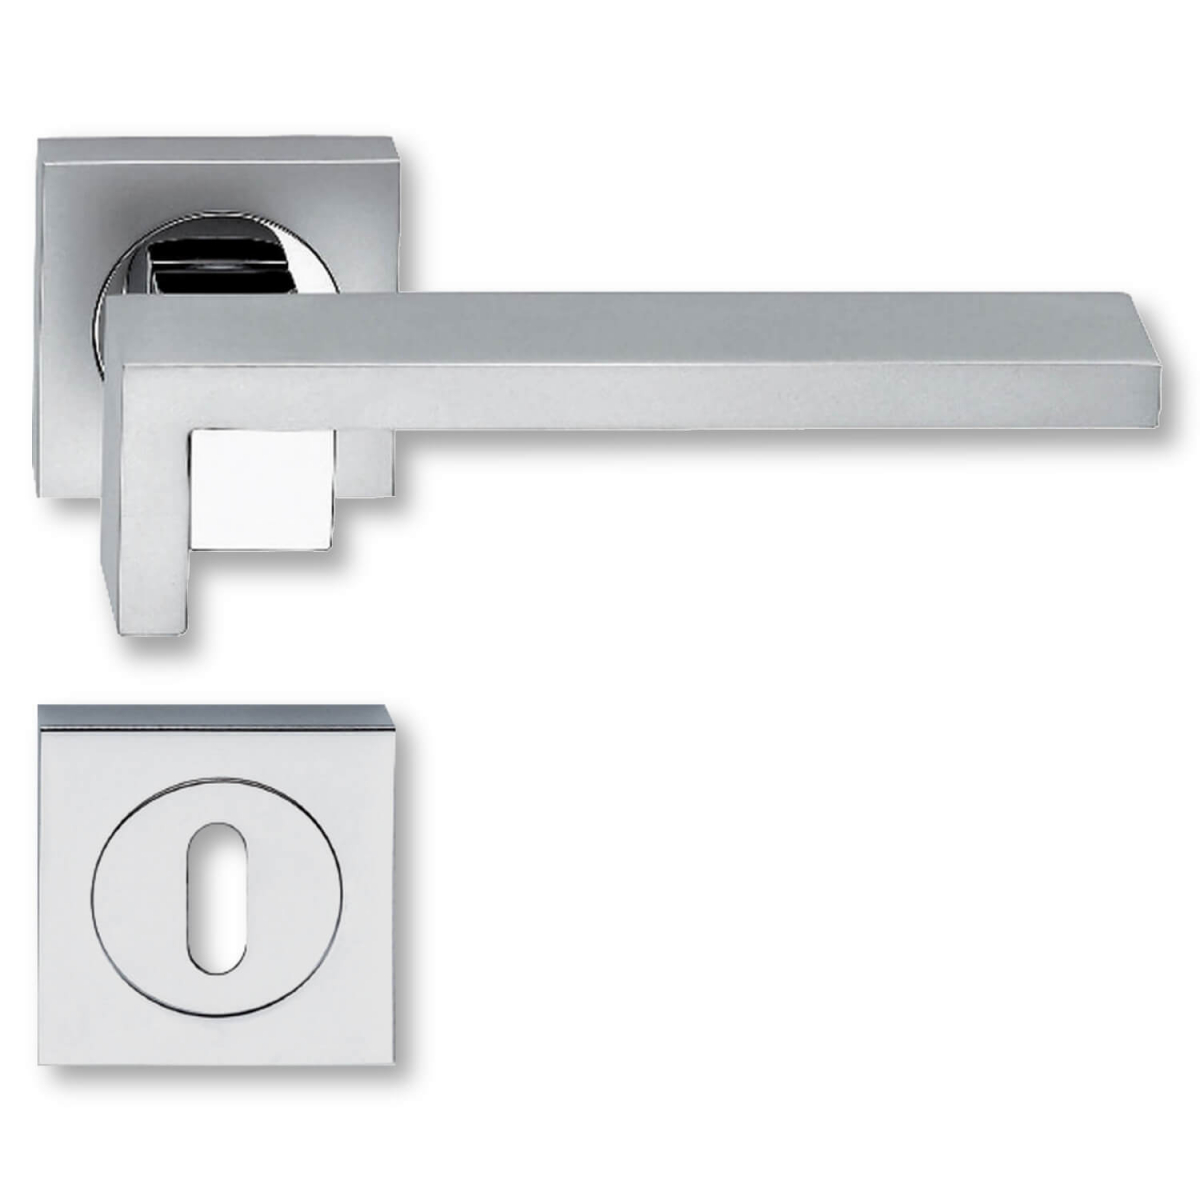 silver chrome door handles